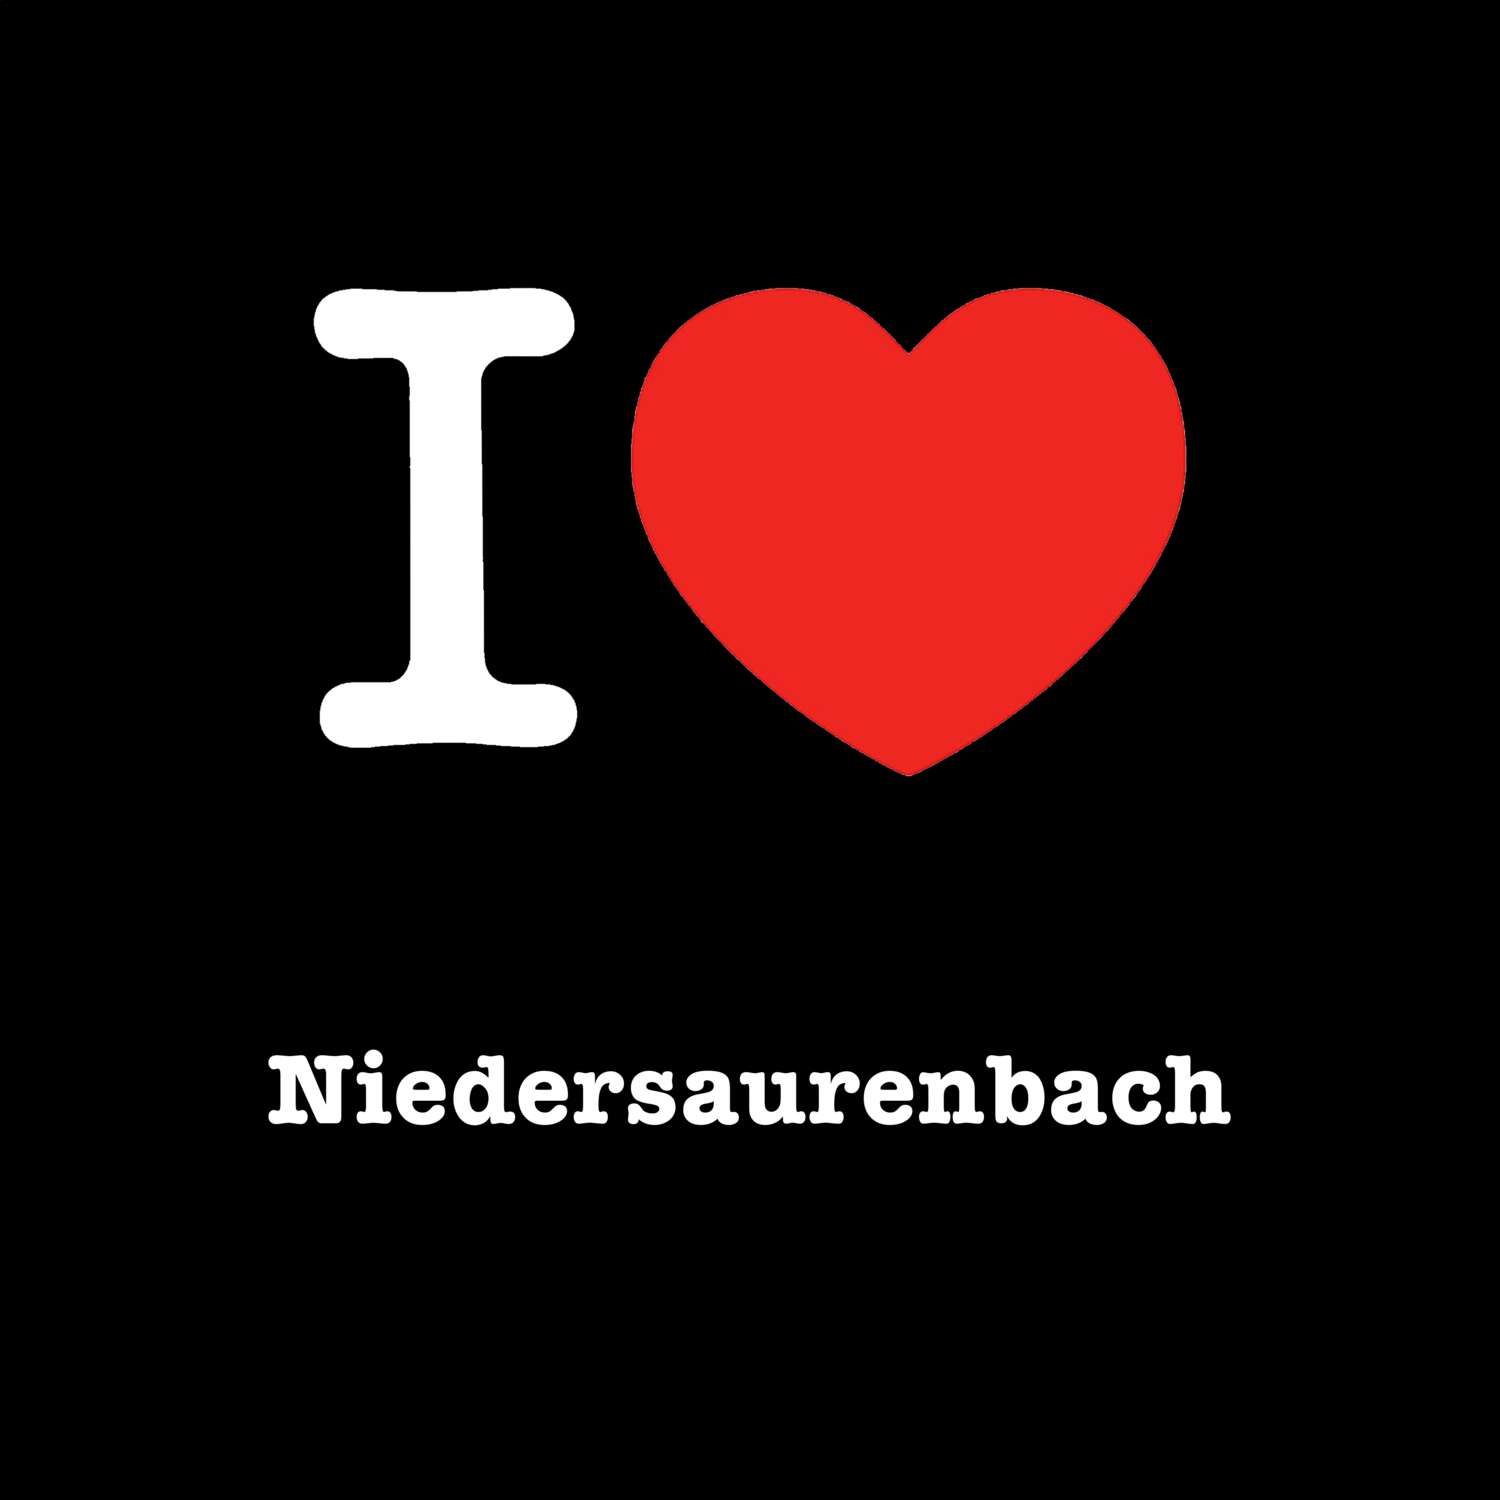 Niedersaurenbach T-Shirt »I love«